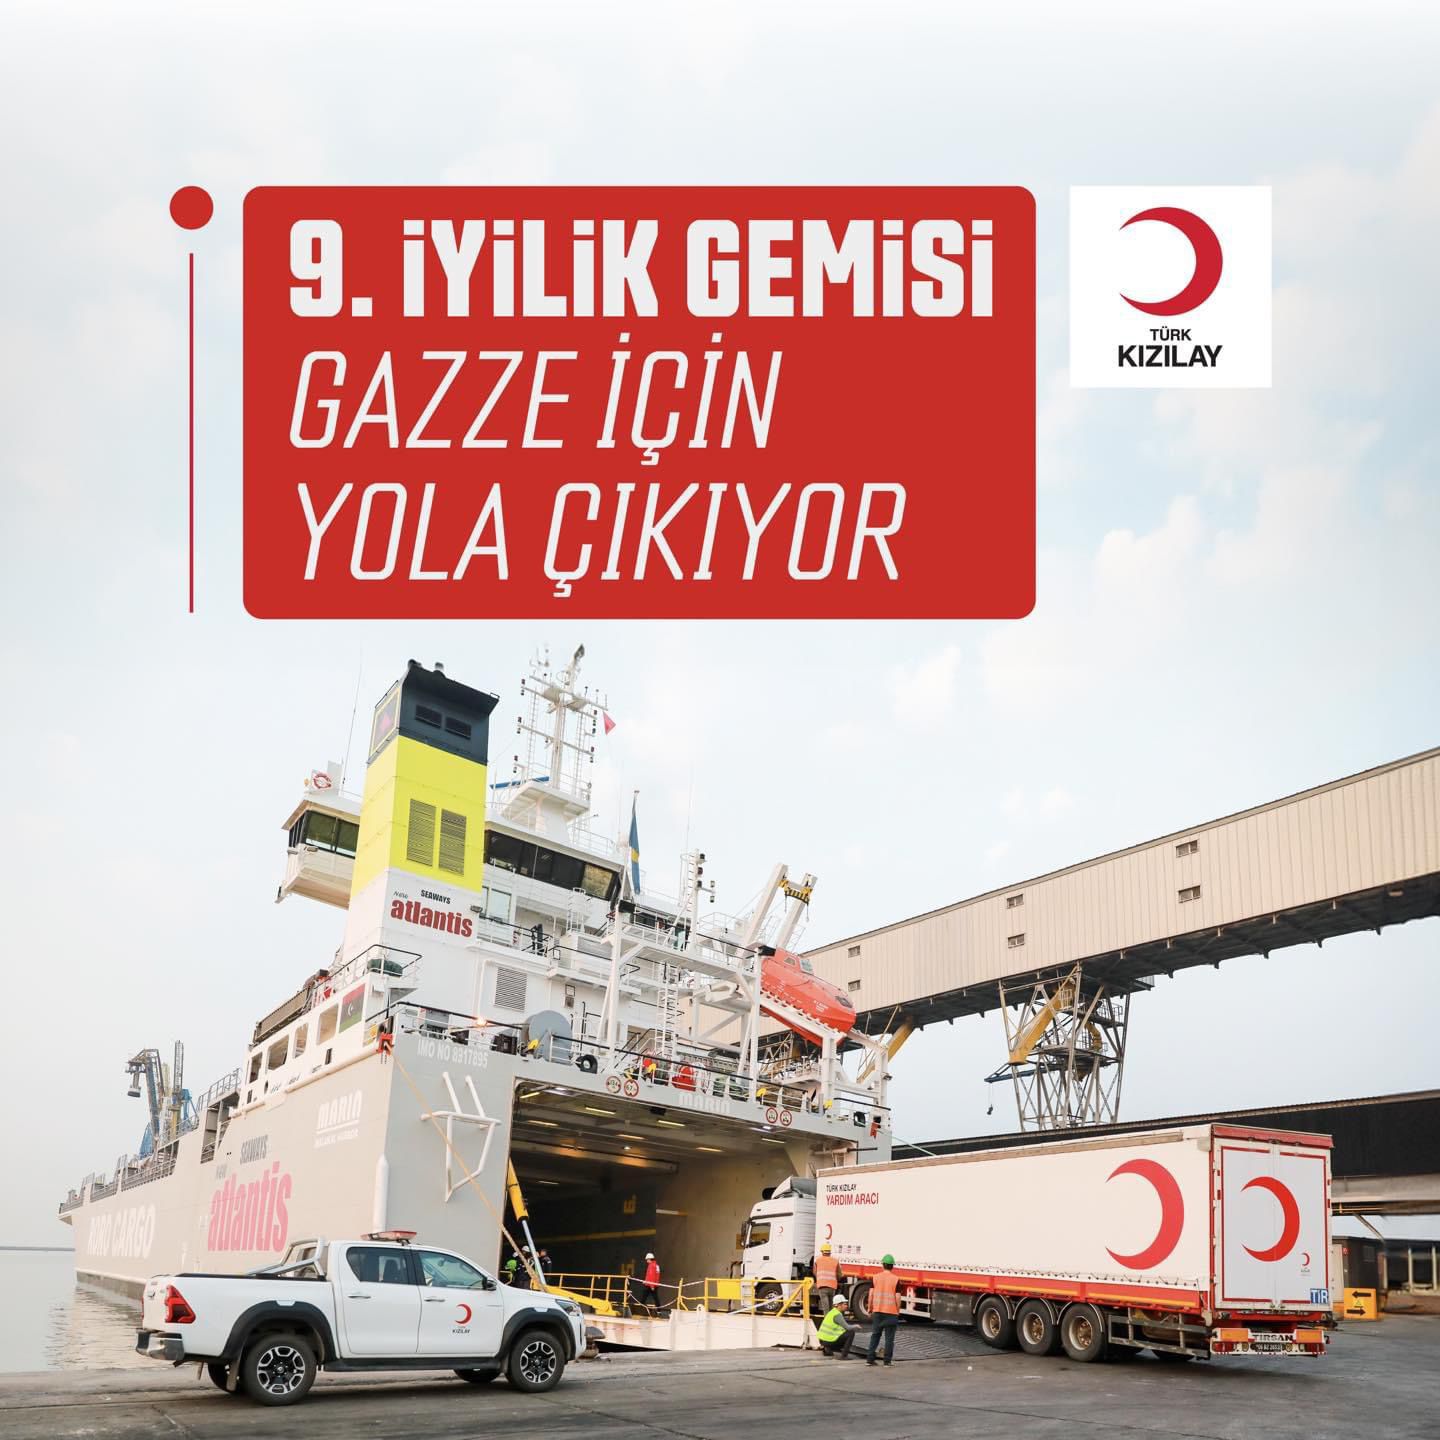 Türk Kızılay’ımız milletimizin emaneti olan 3.770 ton insani yardım malzemelerini dokuzuncu iyilik gemisiyle Gazze’ye gönderdi.